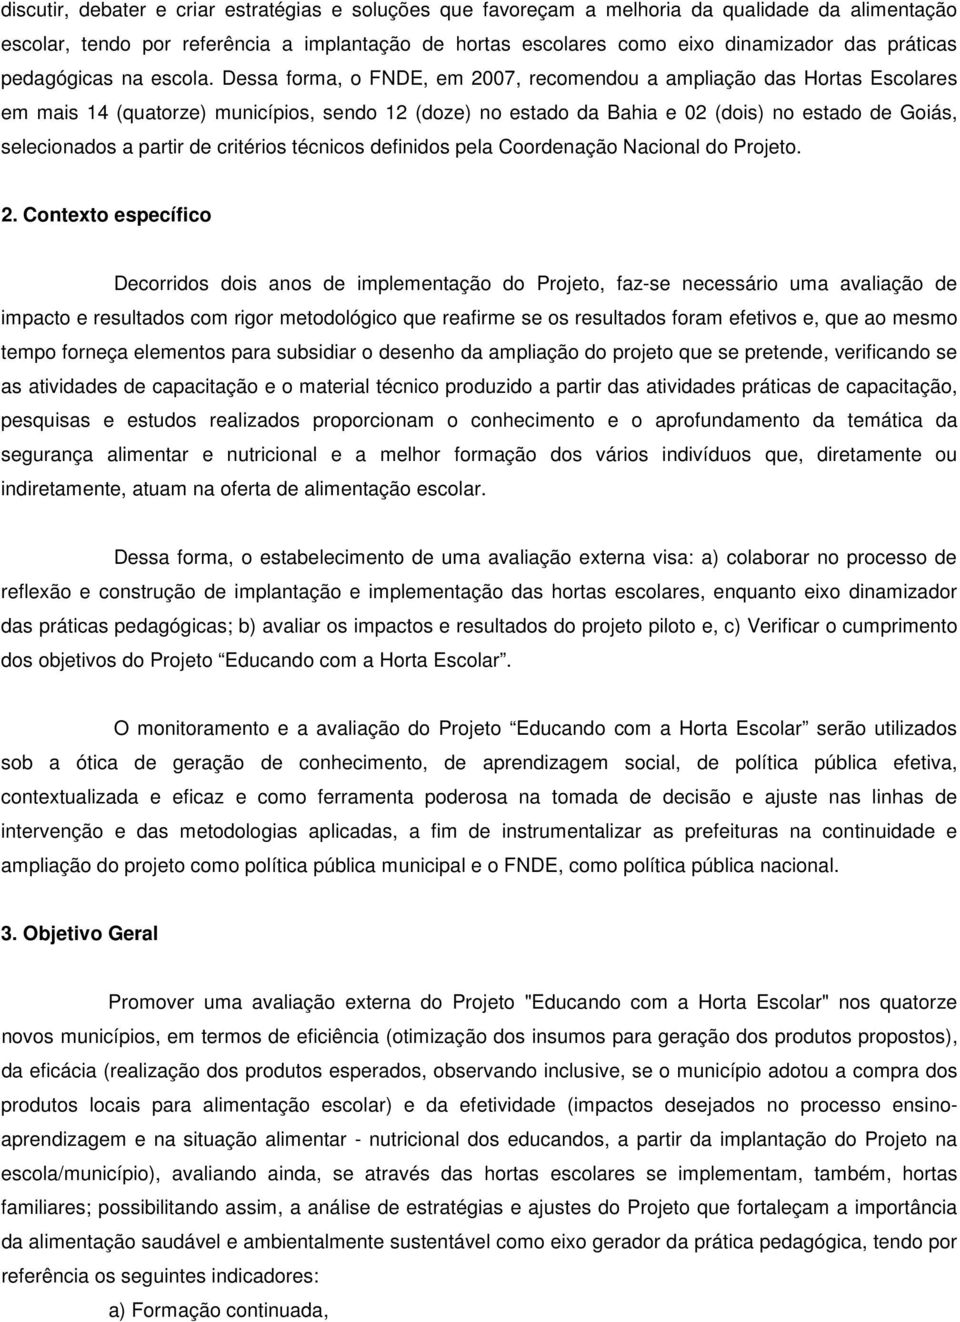 Dessa forma, o FNDE, em 2007, recomendou a ampliação das Hortas Escolares em mais 14 (quatorze) municípios, sendo 12 (doze) no estado da Bahia e 02 (dois) no estado de Goiás, selecionados a partir de